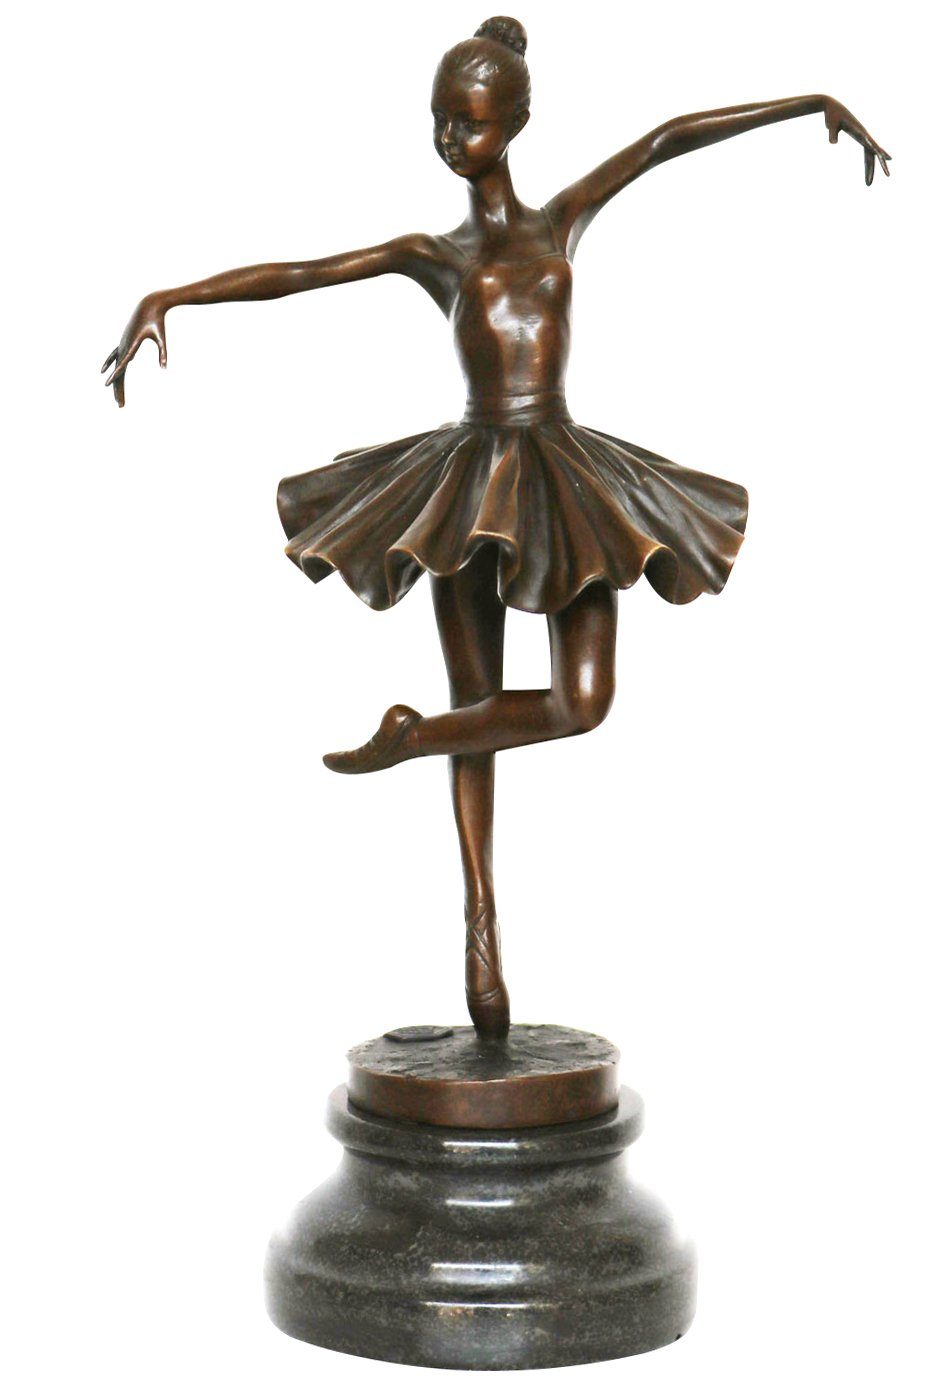 Aubaho Skulptur Bronzeskulptur Tänzerin Ballerina nach Degas Ballett Bronze Figur Repl